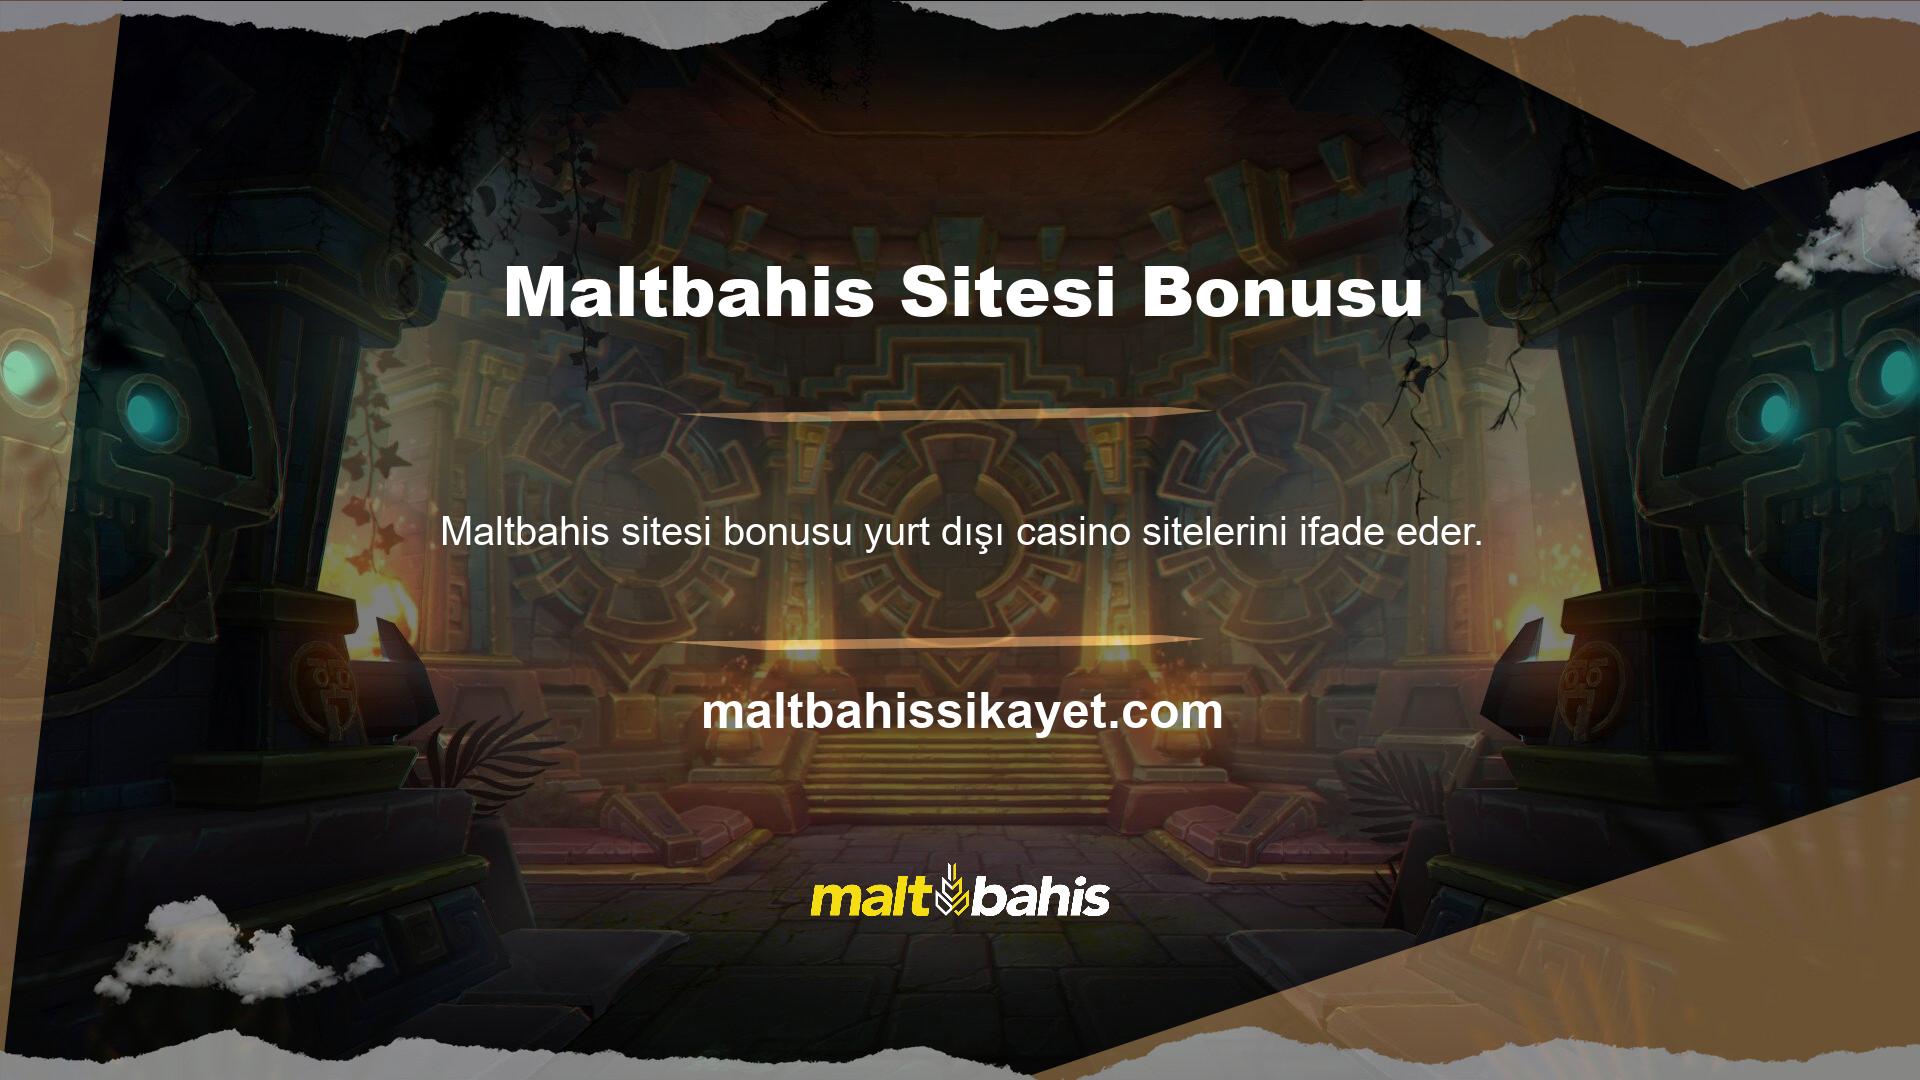 Yeni Maltbahis kimlik bilgilerinizi ve spor, canlı bahis, canlı casino, slot ve sanal spor gibi çevrimiçi hizmet seçeneklerinizi görüntüleyen ana ekran açılacaktır